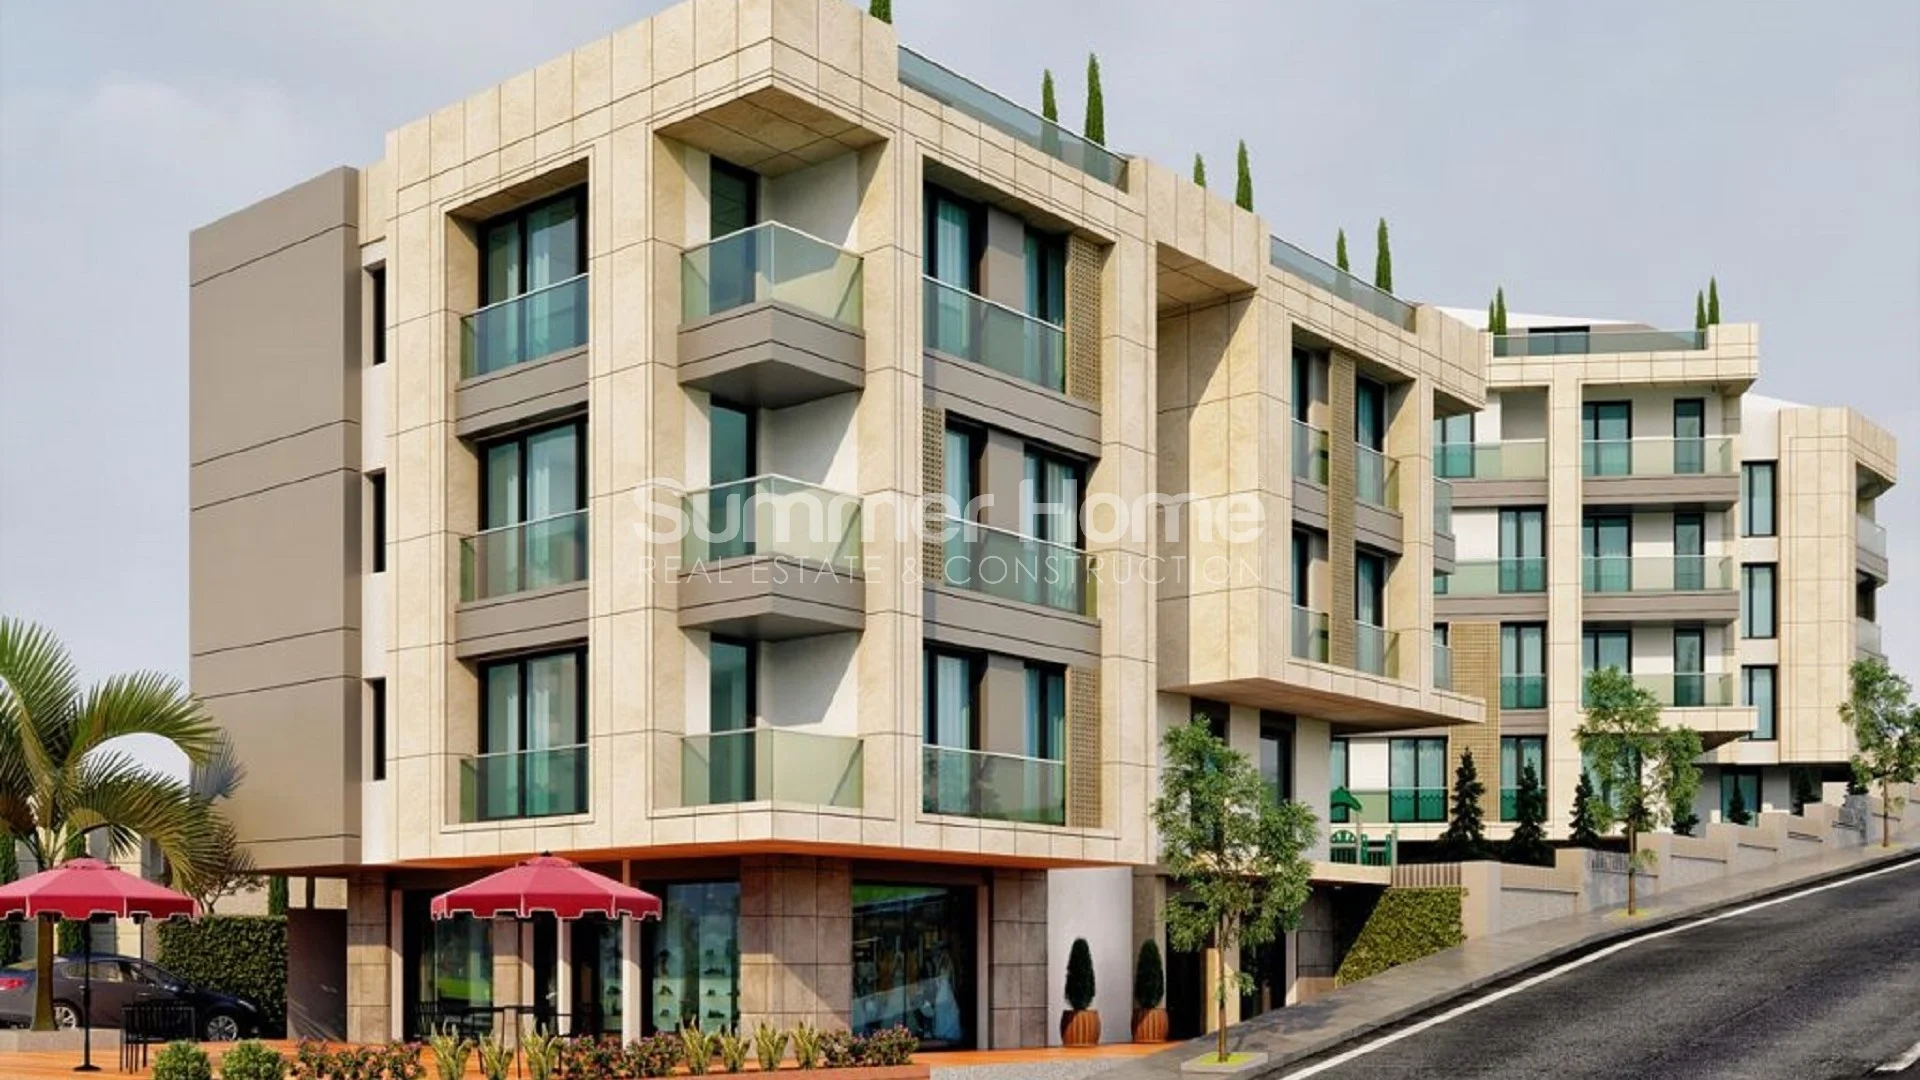 Modern Apartments For Sale in Beylikduzu Plan - 15